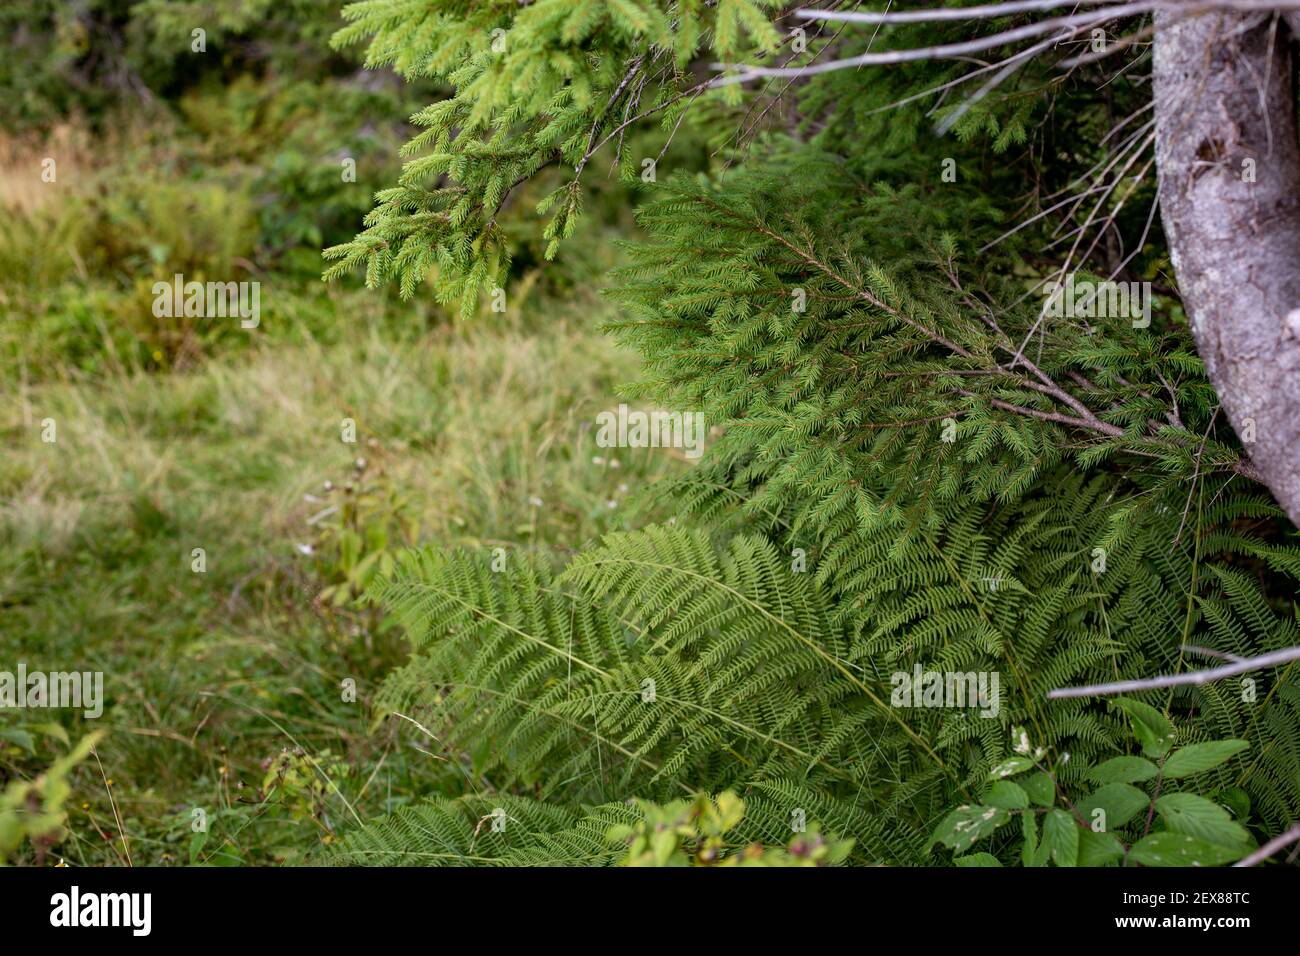 Un gros plan de fougères en croissance à côté d'un pin arbre dans une forêt Banque D'Images